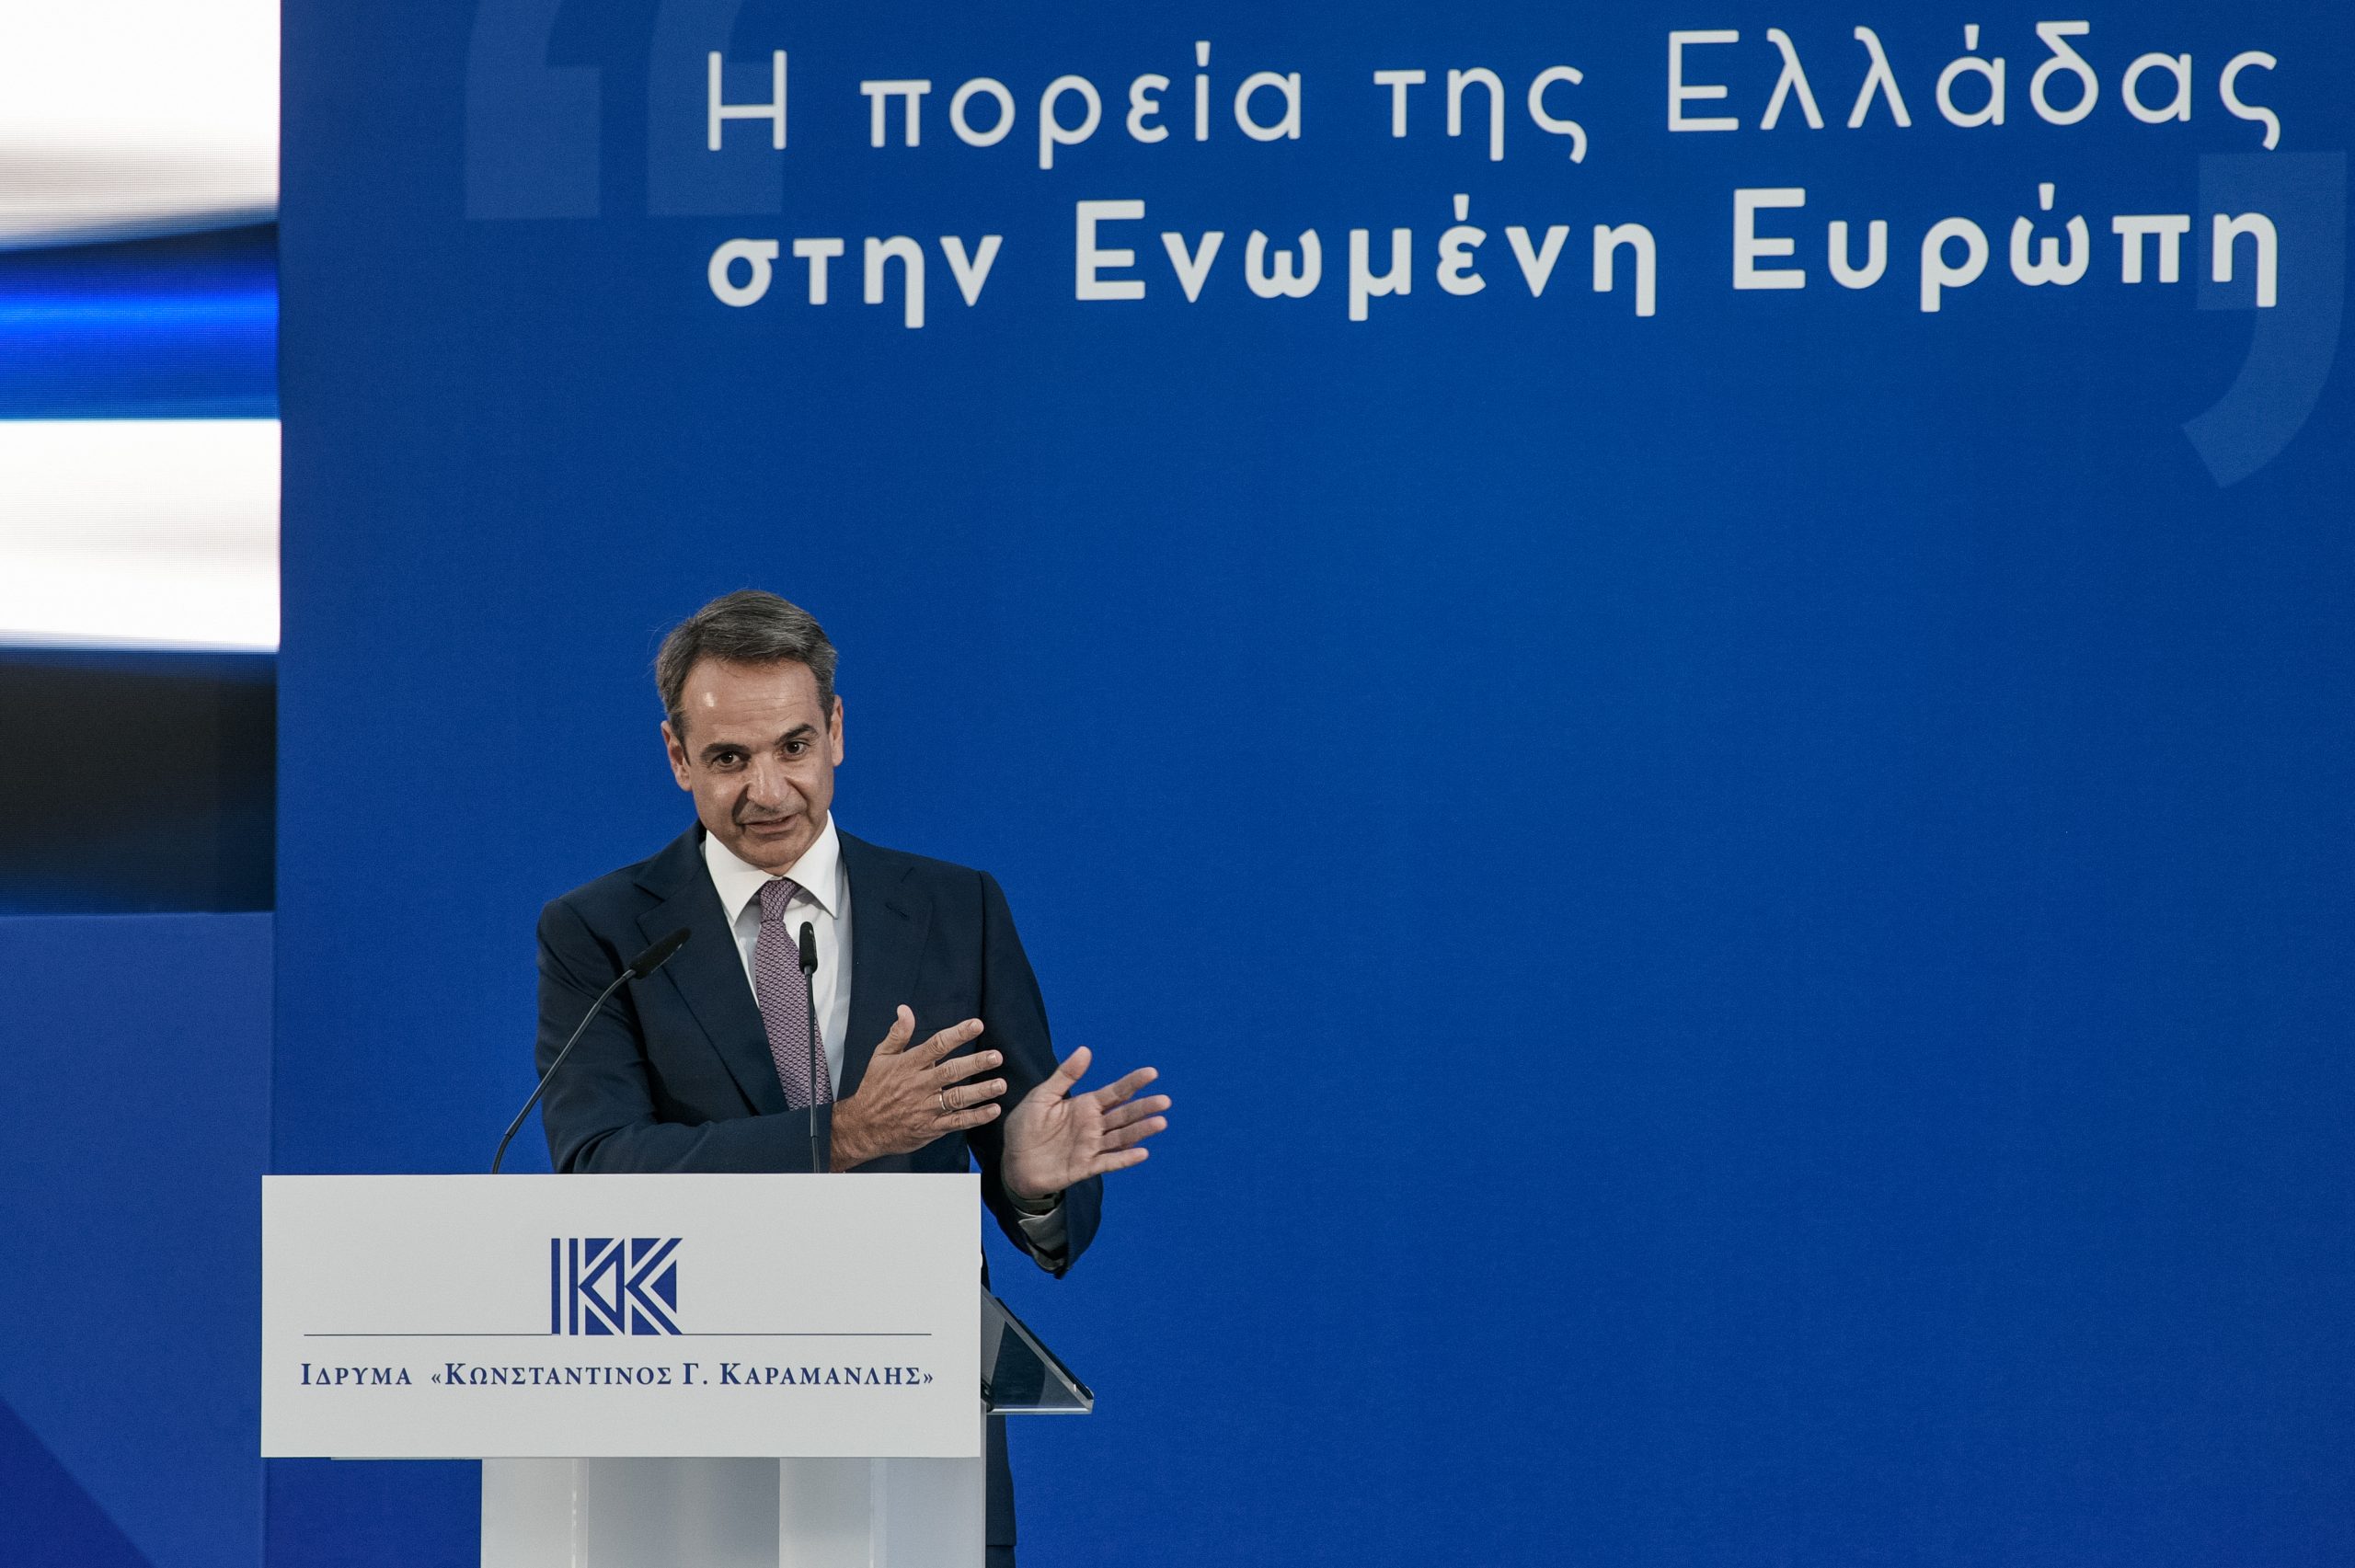 Μητσοτάκης: Η Ελλάδα ανήκει στην Ευρώπη, όχι μόνο για οικονομικούς λόγους